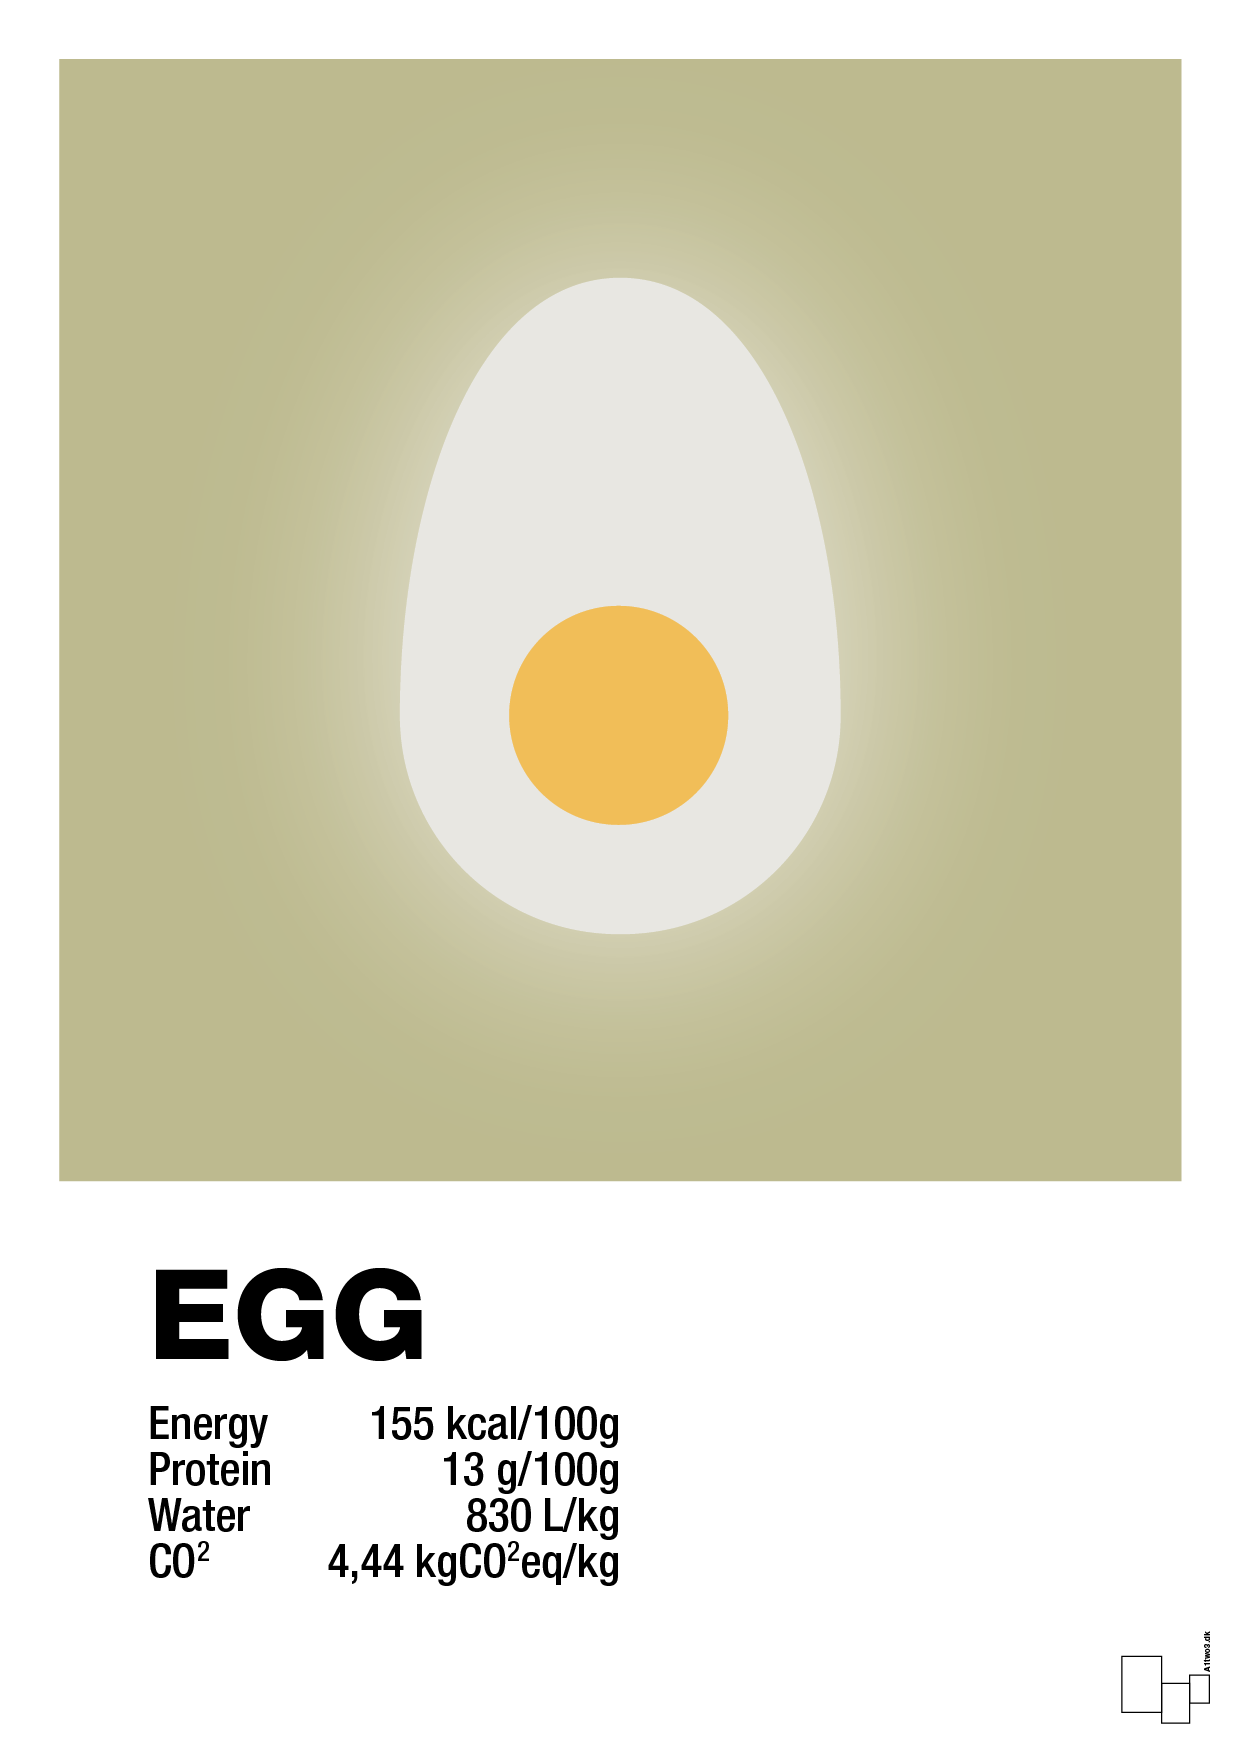 egg nutrition og miljø - Plakat med Mad & Drikke i Back to Nature